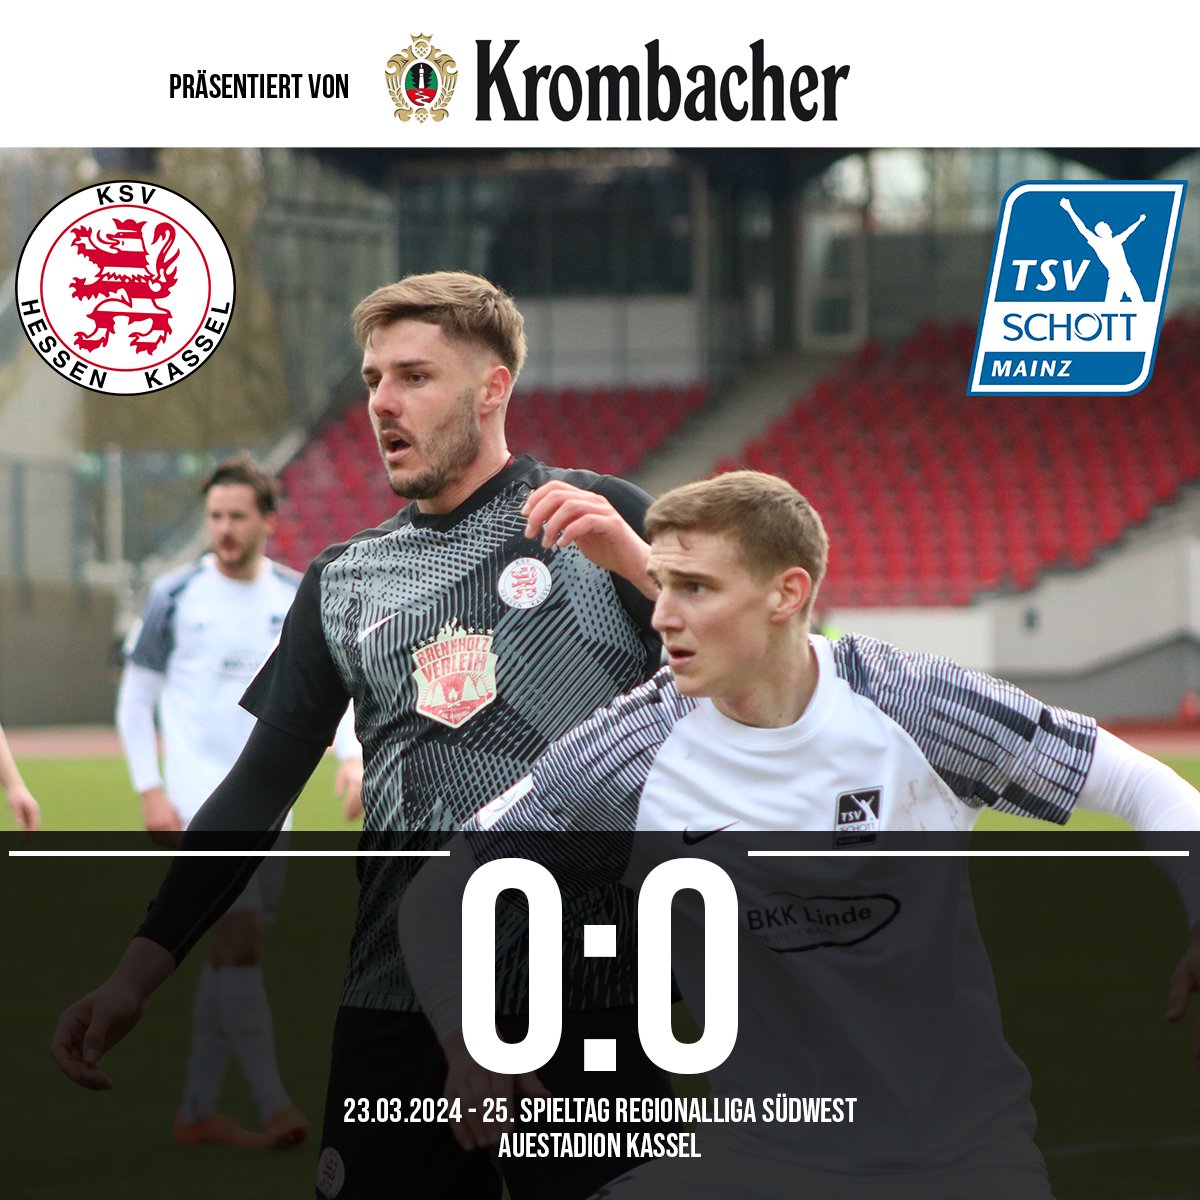 Das war leider nix. Die schwierige Partie gegen Schott Mainz endet mit einem torlosen Unentschieden. #ksvhessen #kassel #ksvhessenkassel #löwen #ksvtsv #regionalligasüdwest